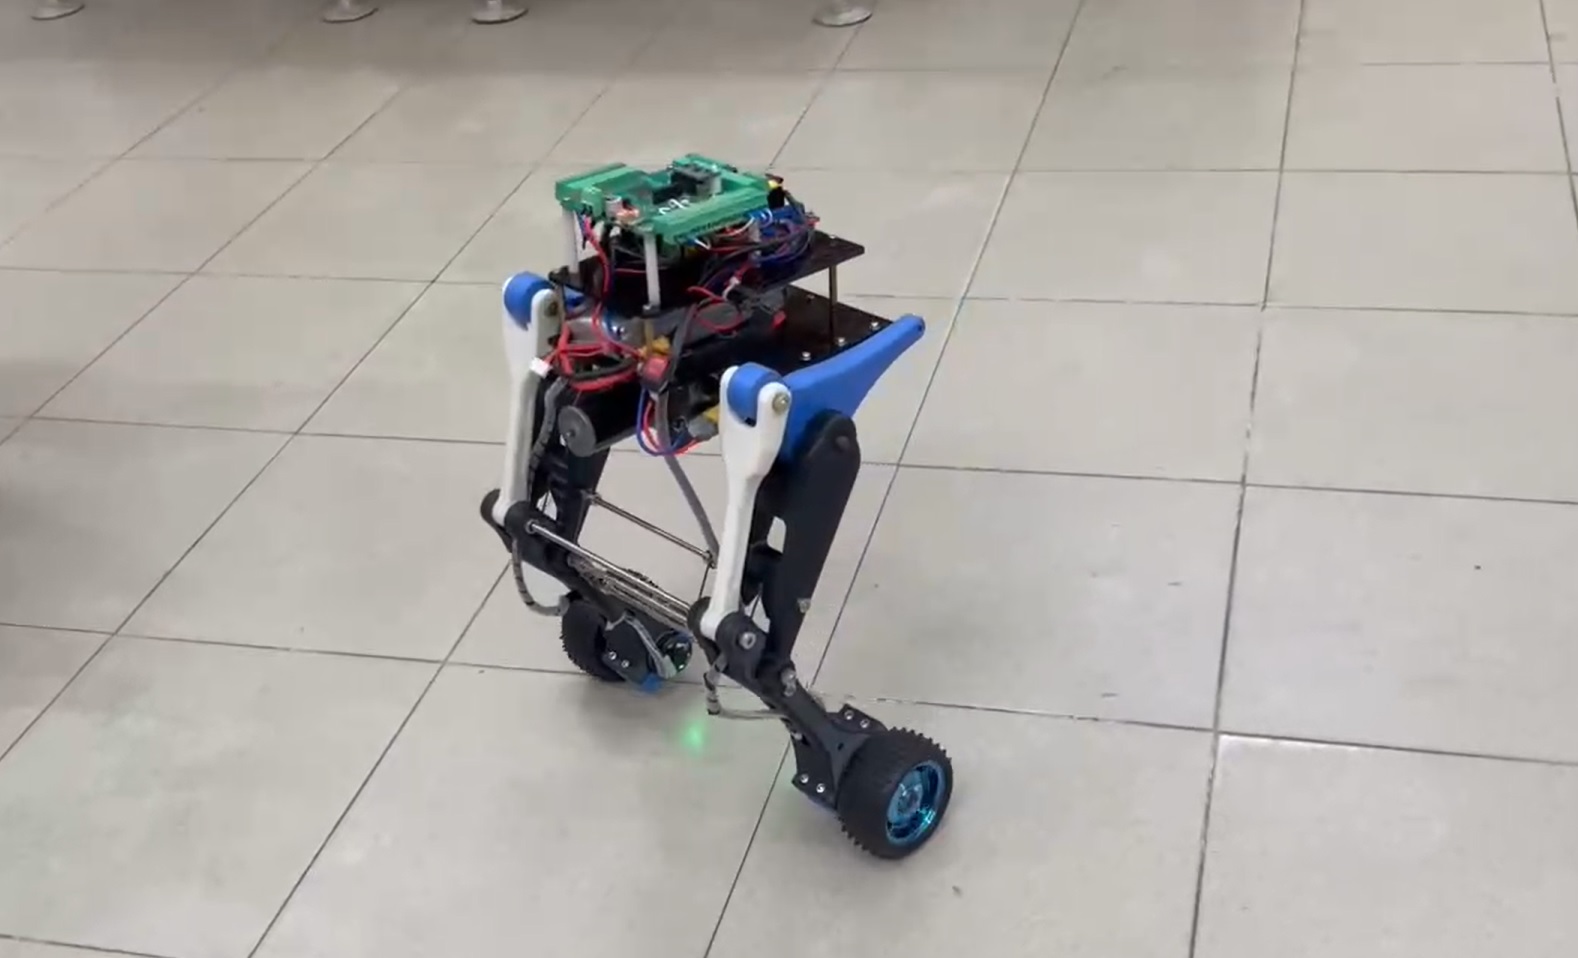 Tiến sĩ Việt làm robot 2 bánh tự cân bằng khi thay đổi độ cao